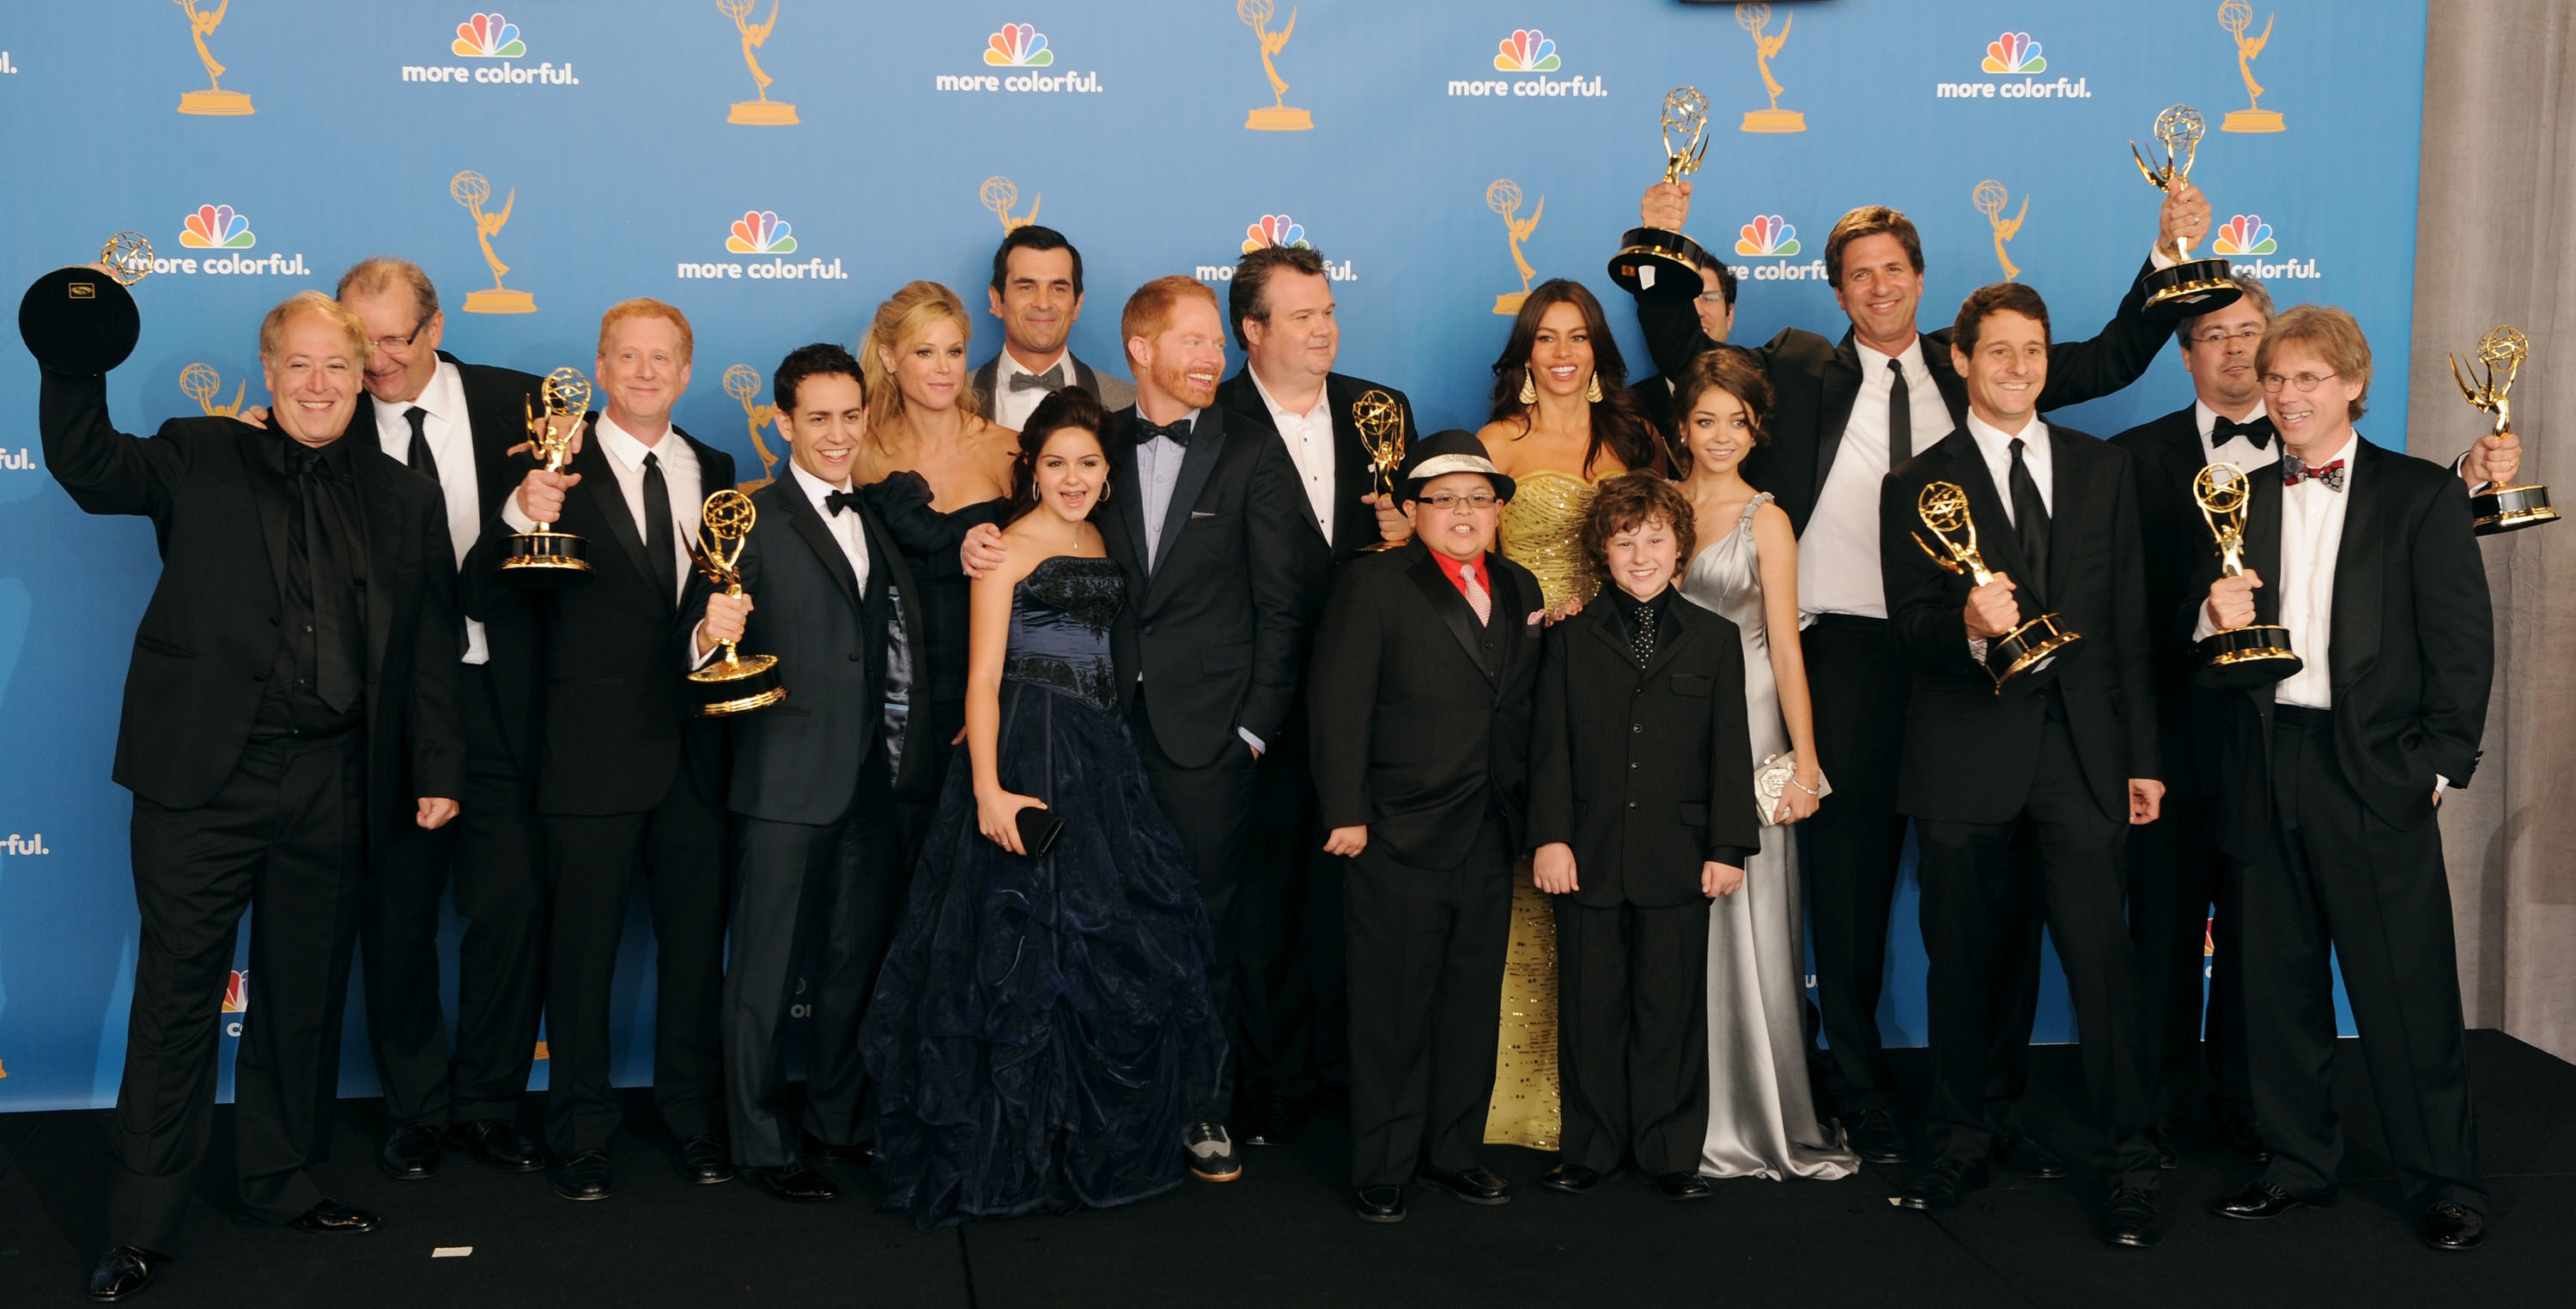 演员和工作人员的“现代Family"造成后台后赢得了杰出的喜剧艾美奖。